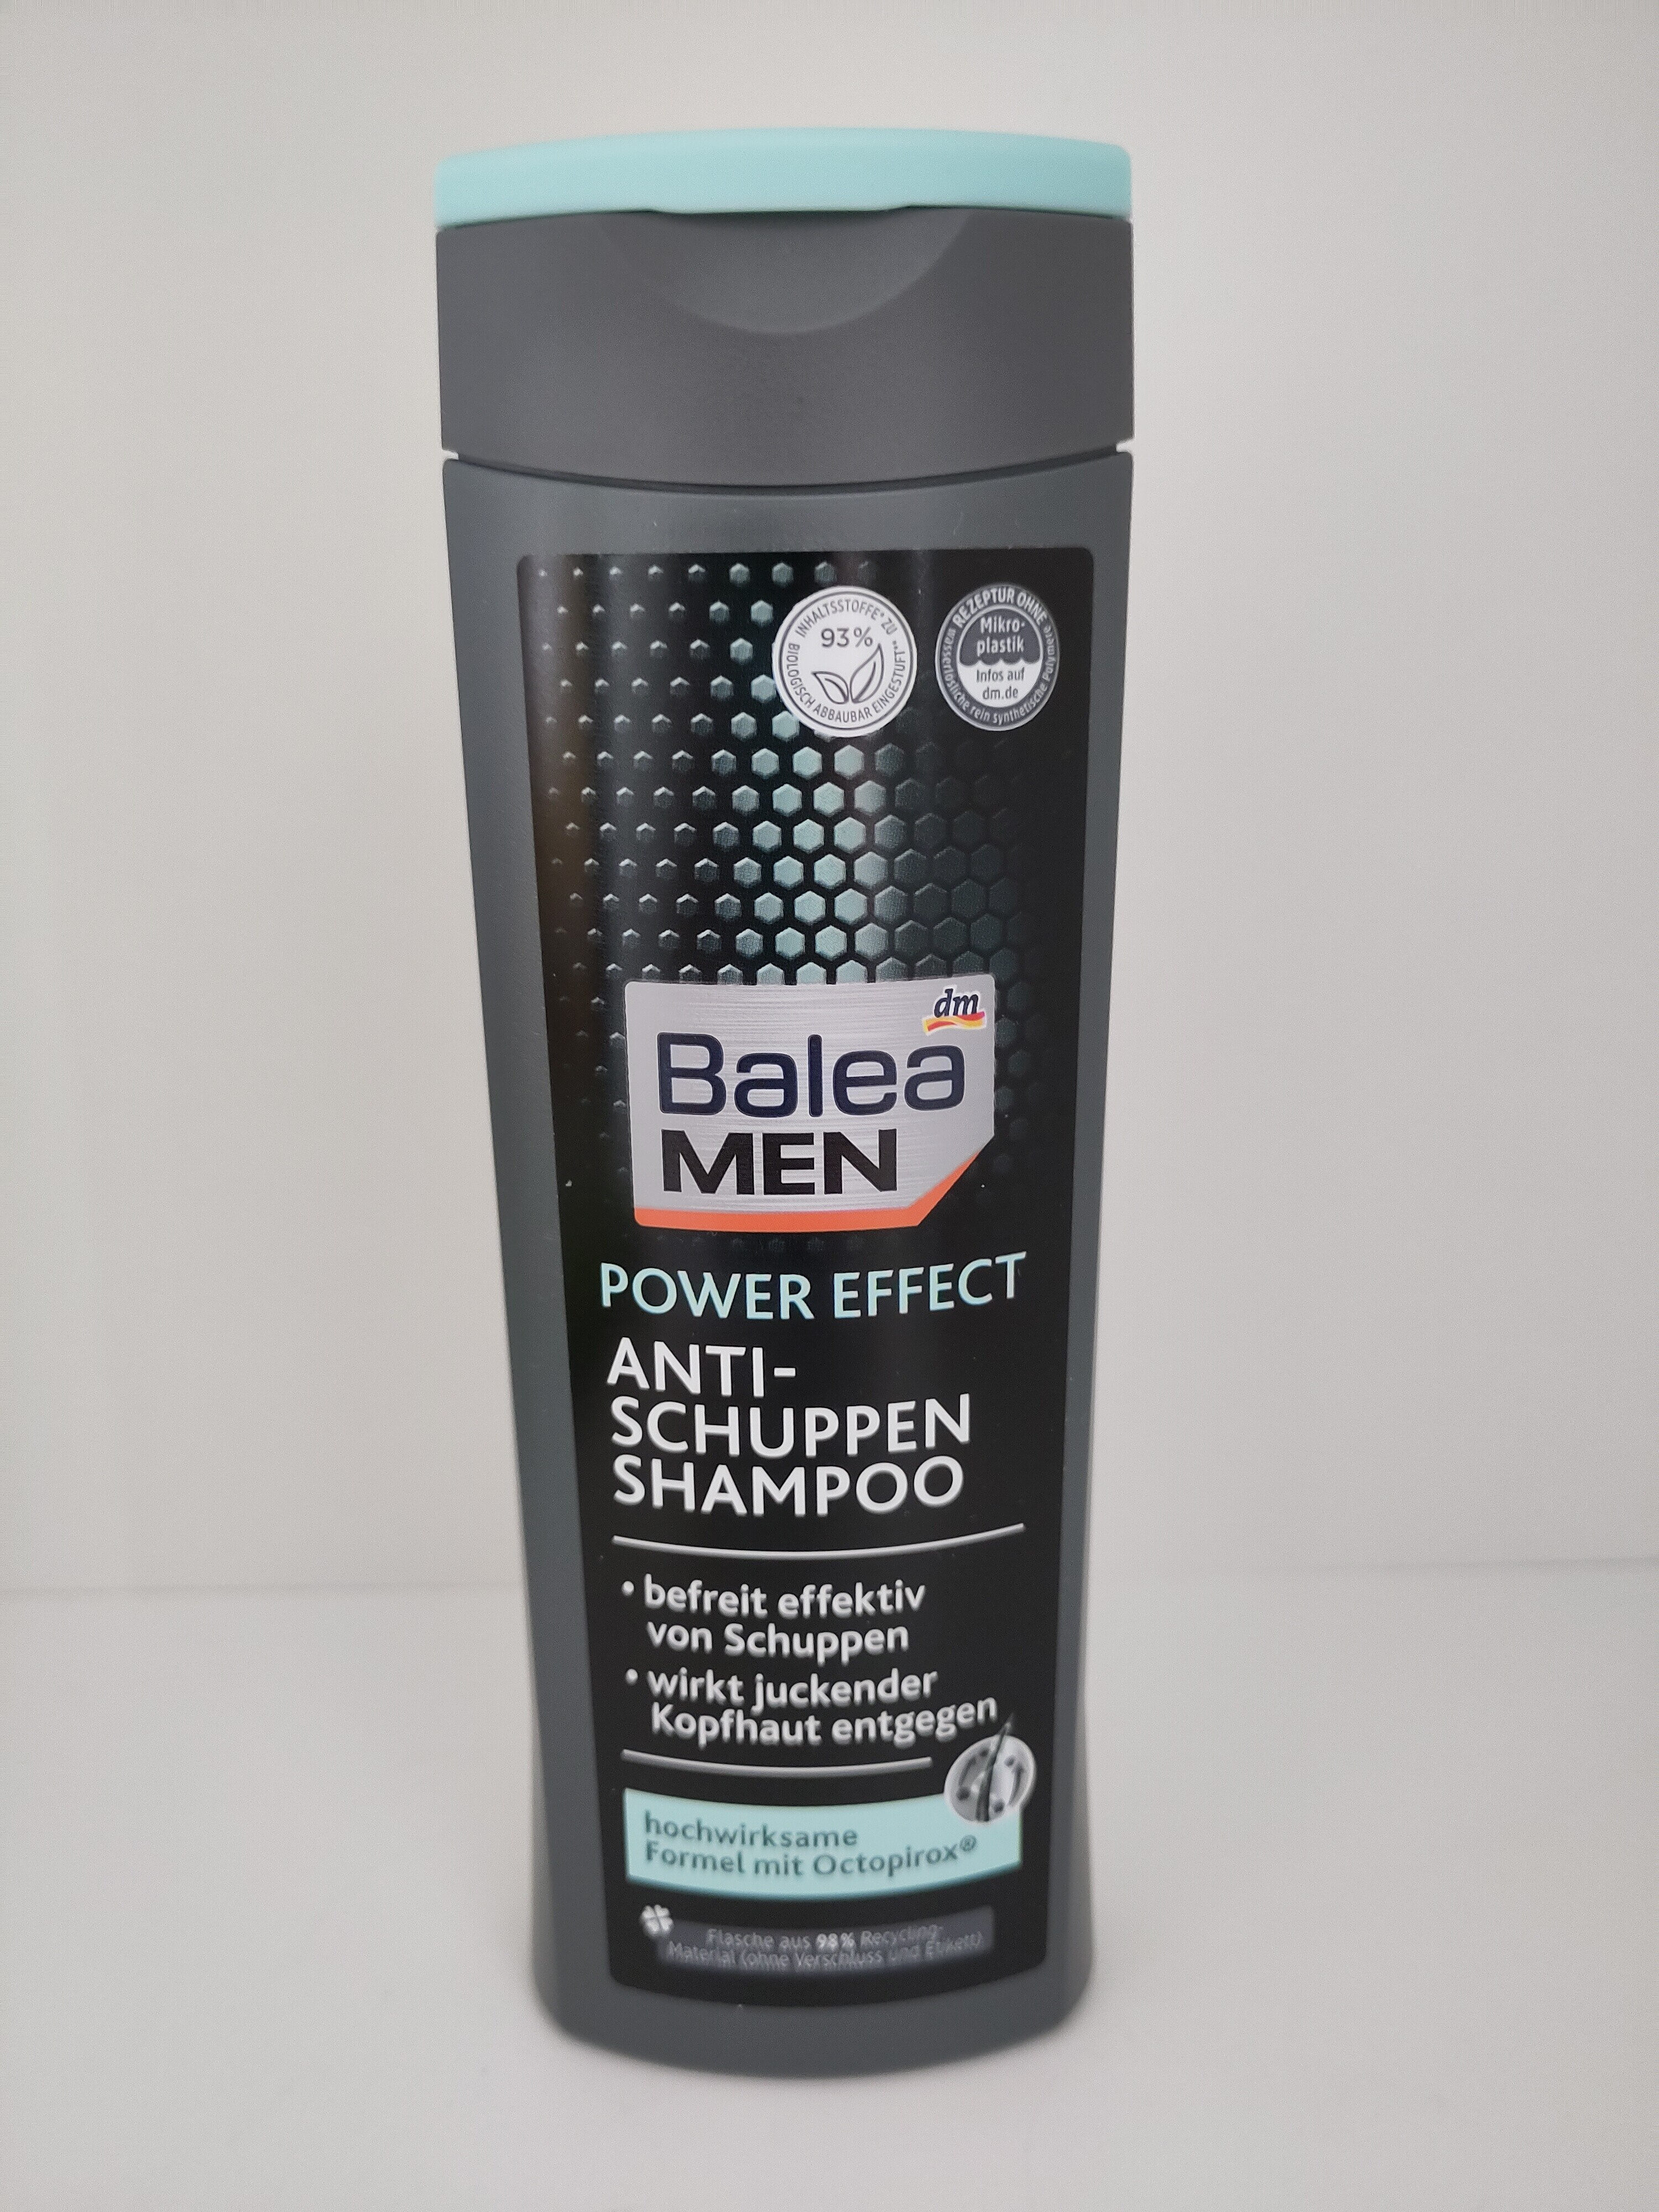 Anti-Schuppen Shampoo - Produit - de